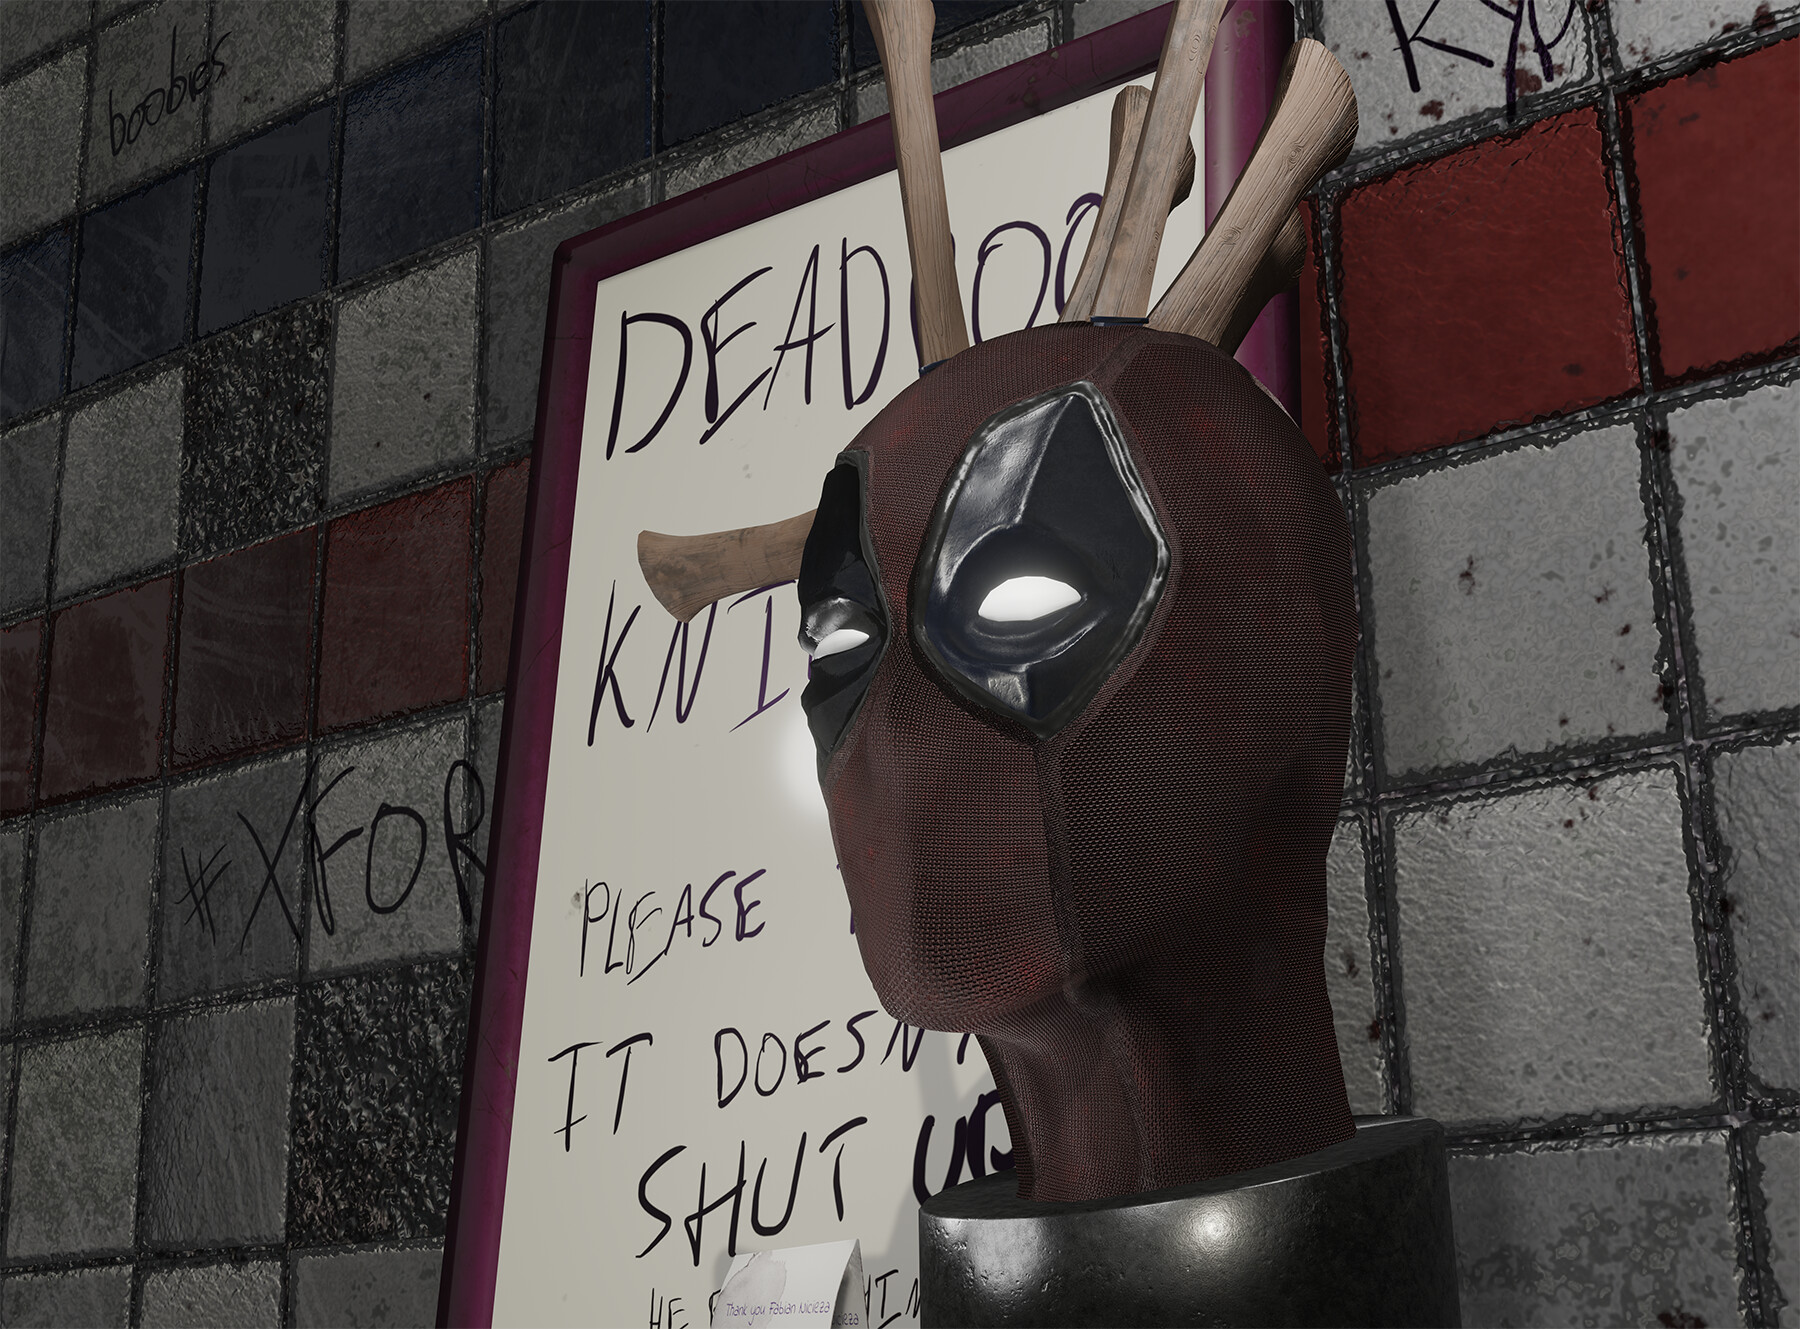 ArtStation - Deadpool Knife Block (Fan art)